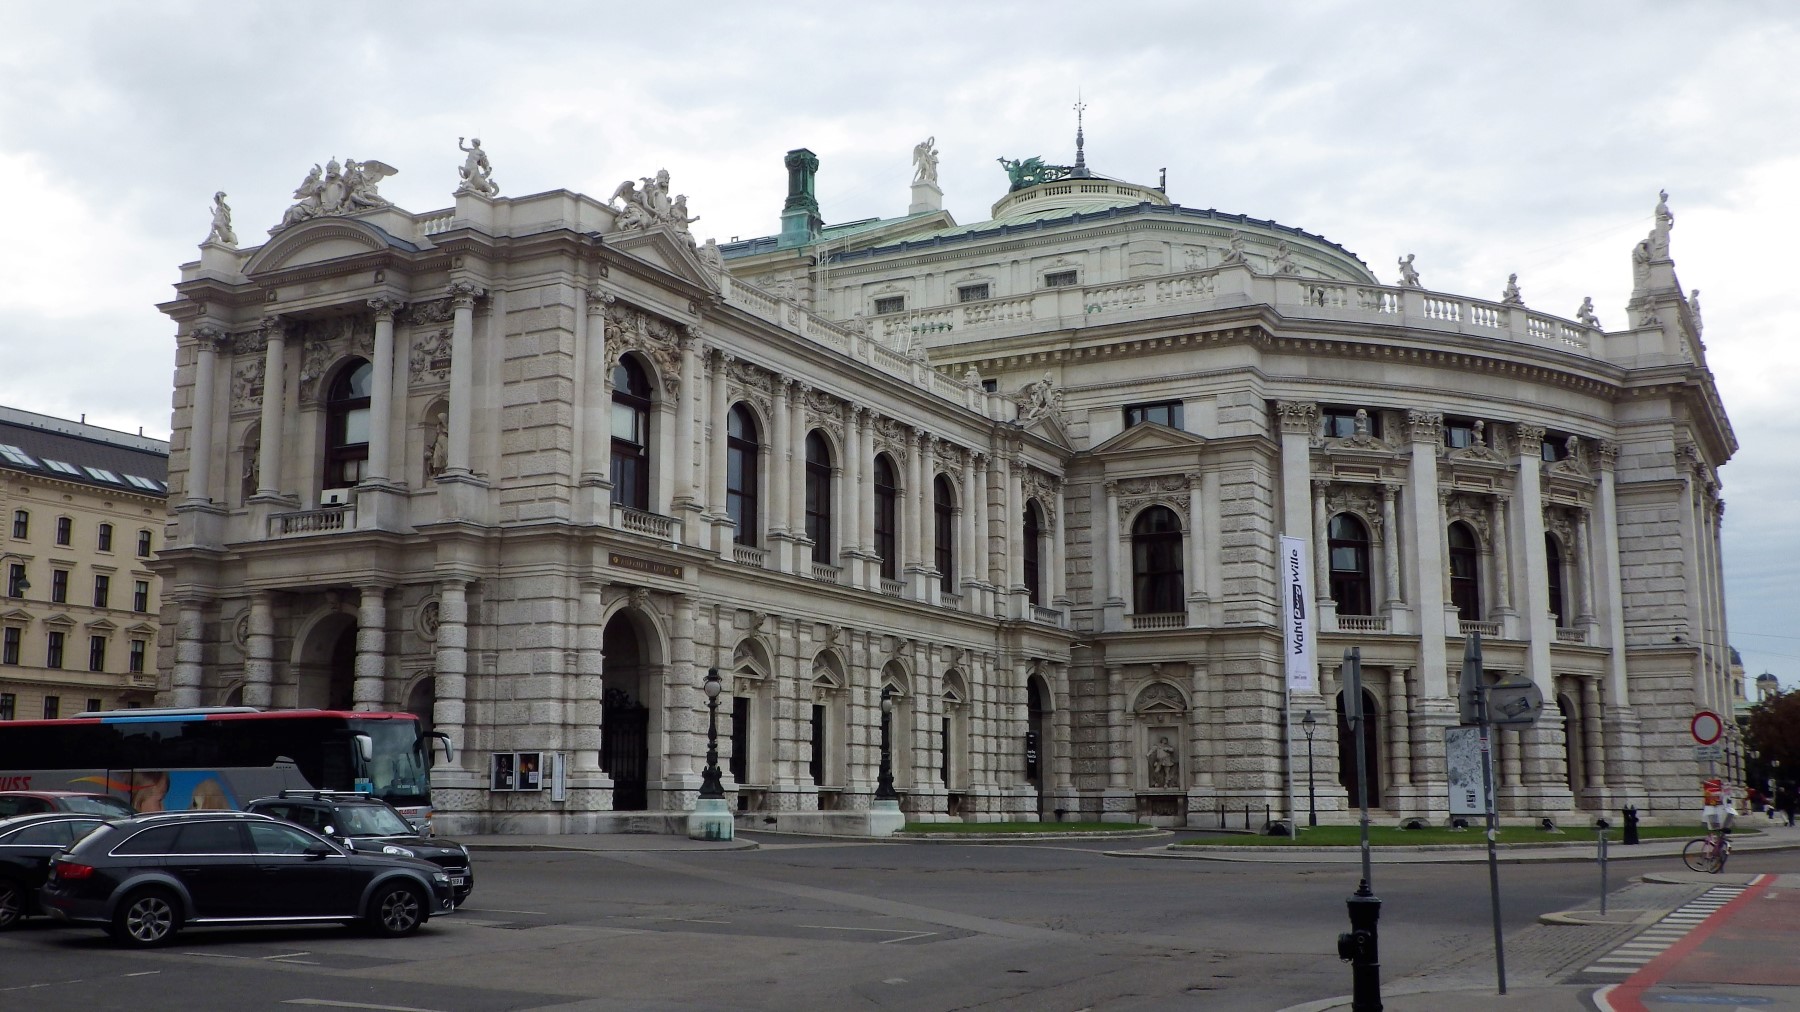 Utazásaim tükrében Bécs